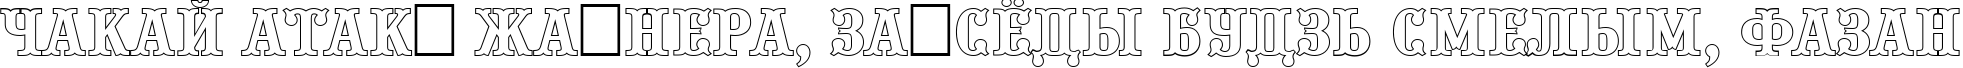 Пример написания шрифтом a_PresentumOtl текста на белорусском